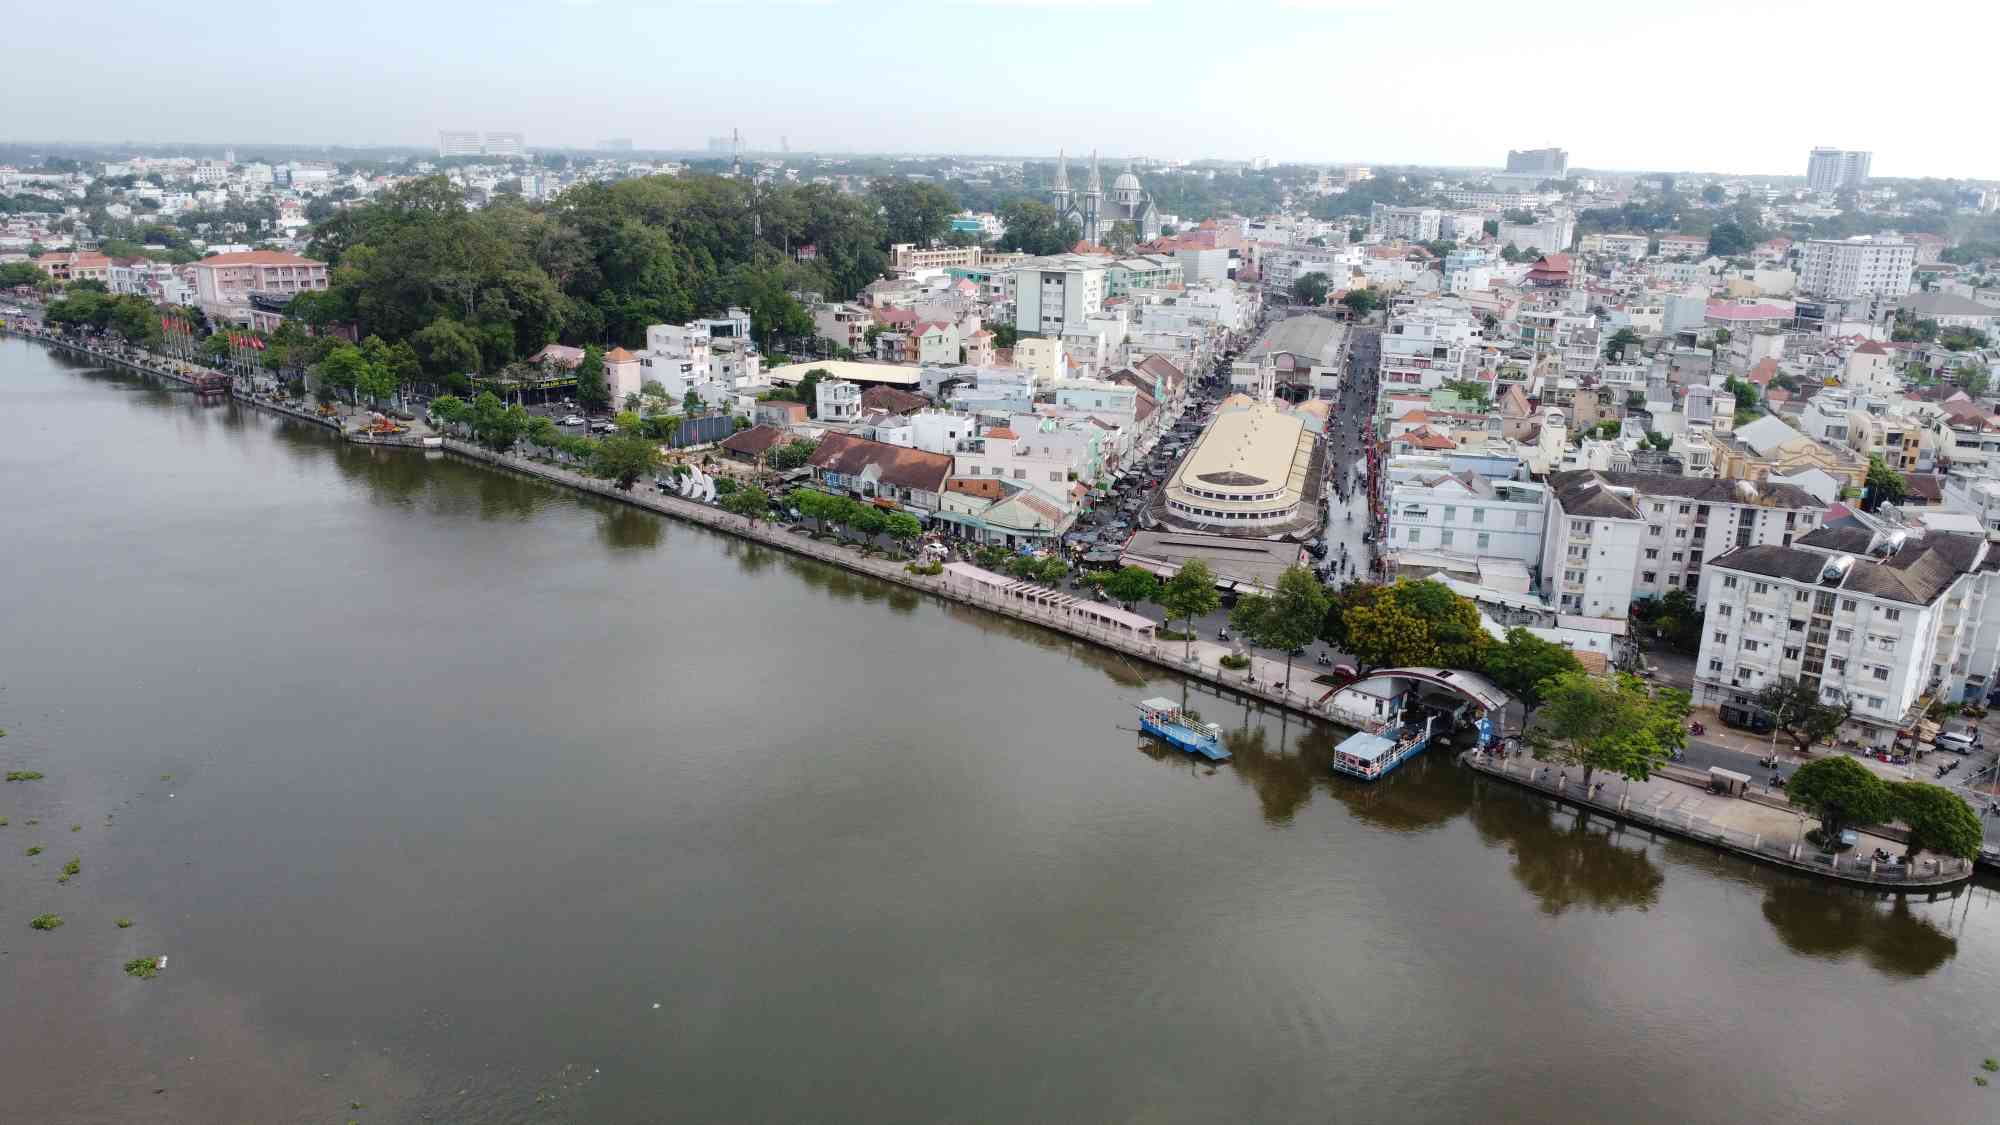 Đoạn công viên phố đi bộ Bạch Đằng dài khoảng 1km rộng 15m chạy dọc bờ sông Sài Gòn trở thành điểm đến hấp dẫn đối với người dân Bình Dương.